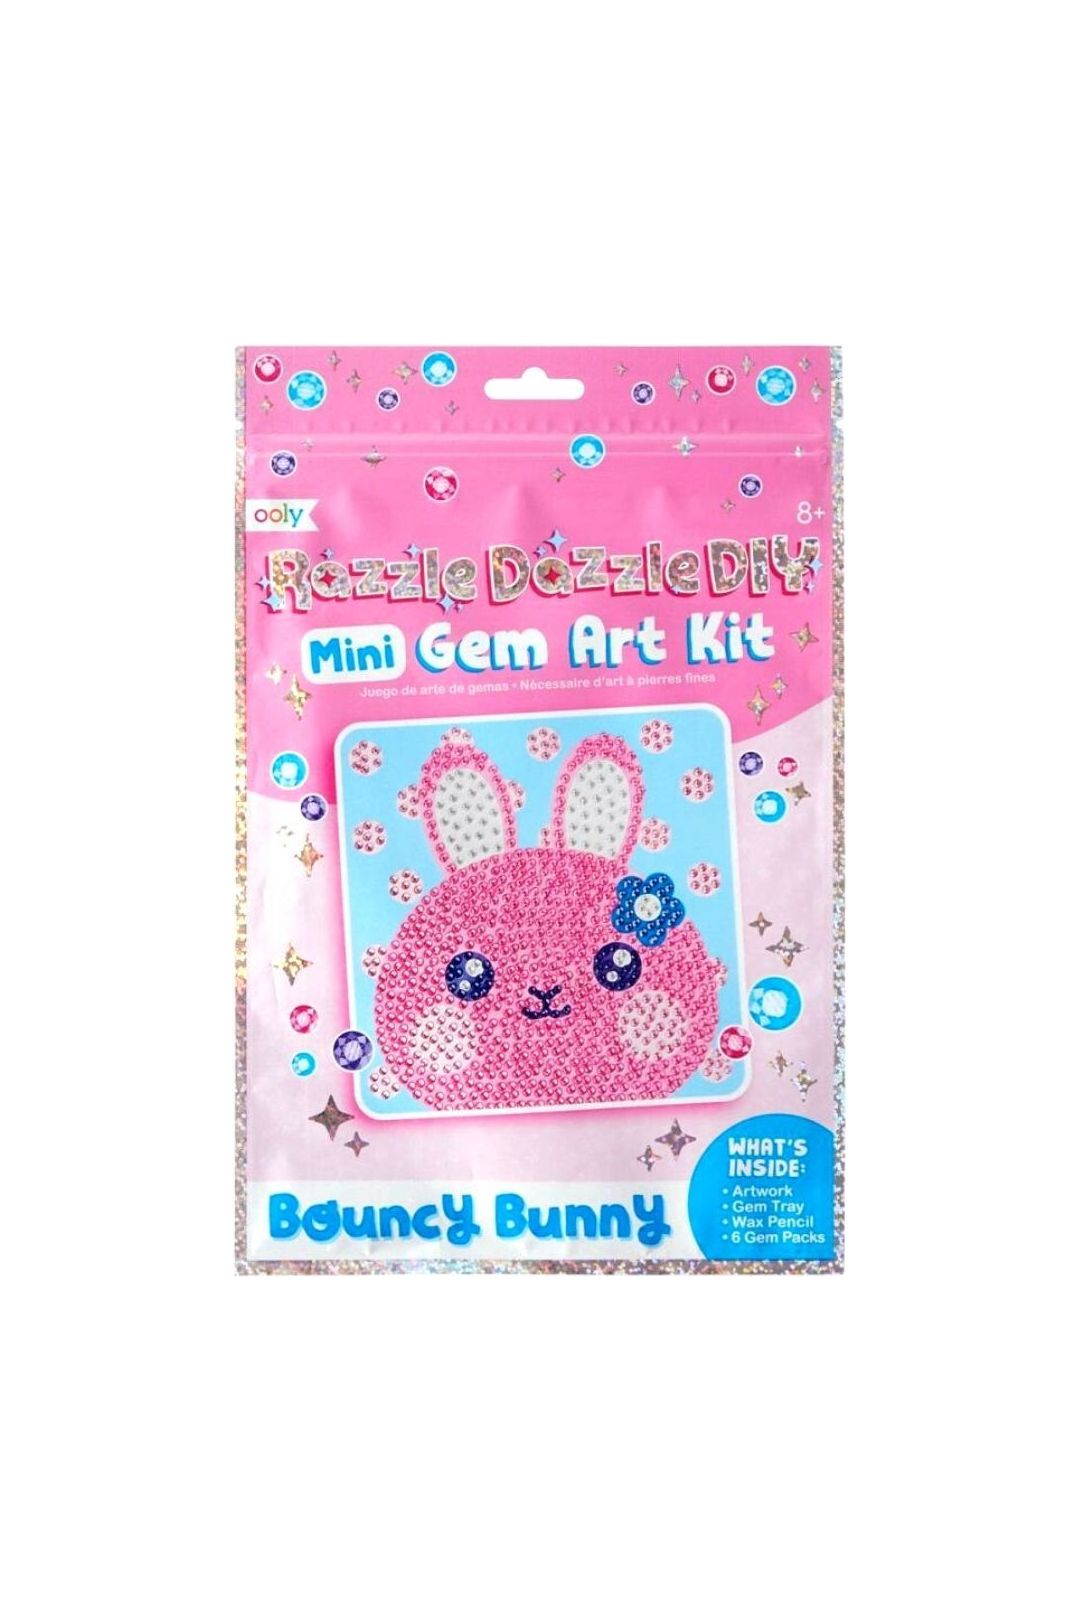 Razzle Dazzle Mini DIY Gem Art Kit - Bouncy Bunny